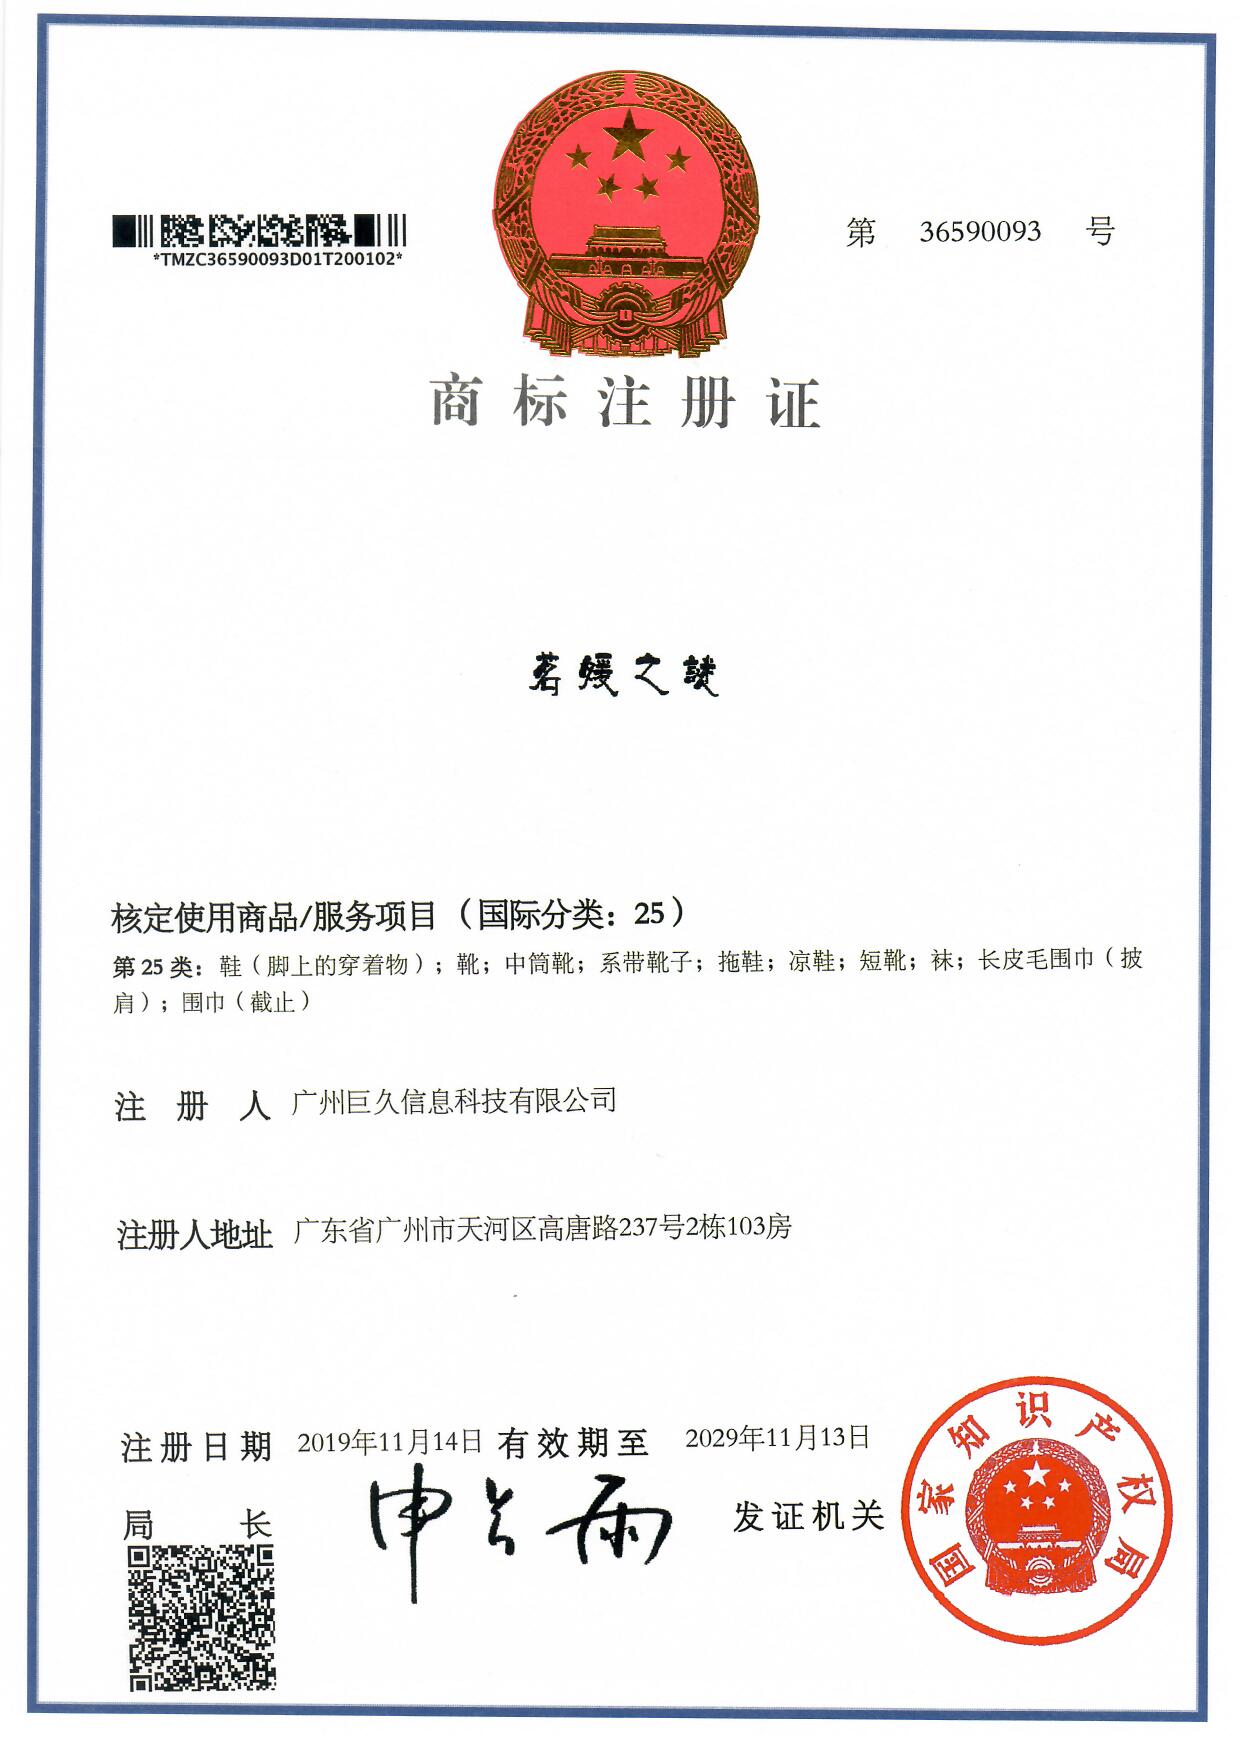 广州巨久信息科技有限公司商标注册证36590093.jpg